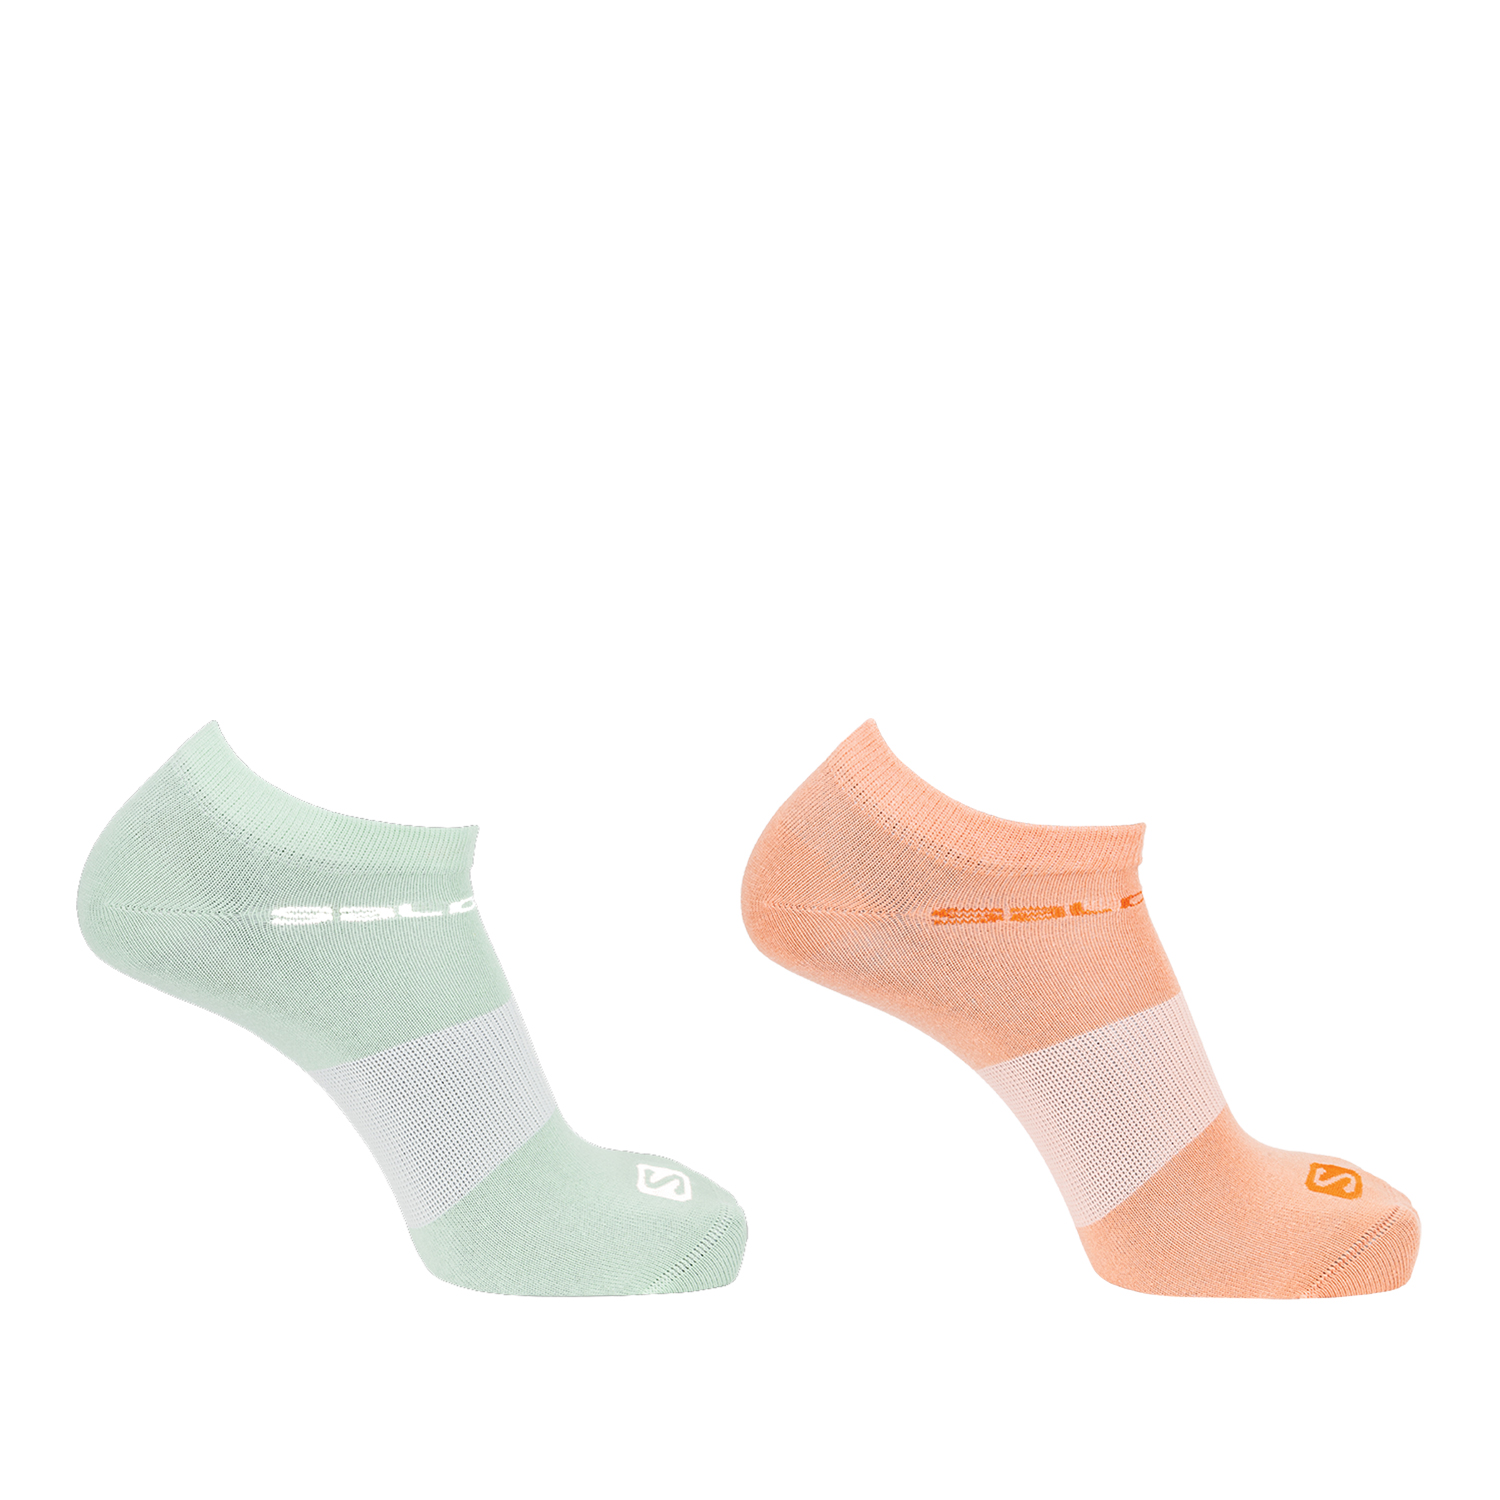 Комплект носков унисекс Socks Festival 2-Pack зеленый; оранжевый S 2 пары - купить в КАНТ, цена на Мегамаркет